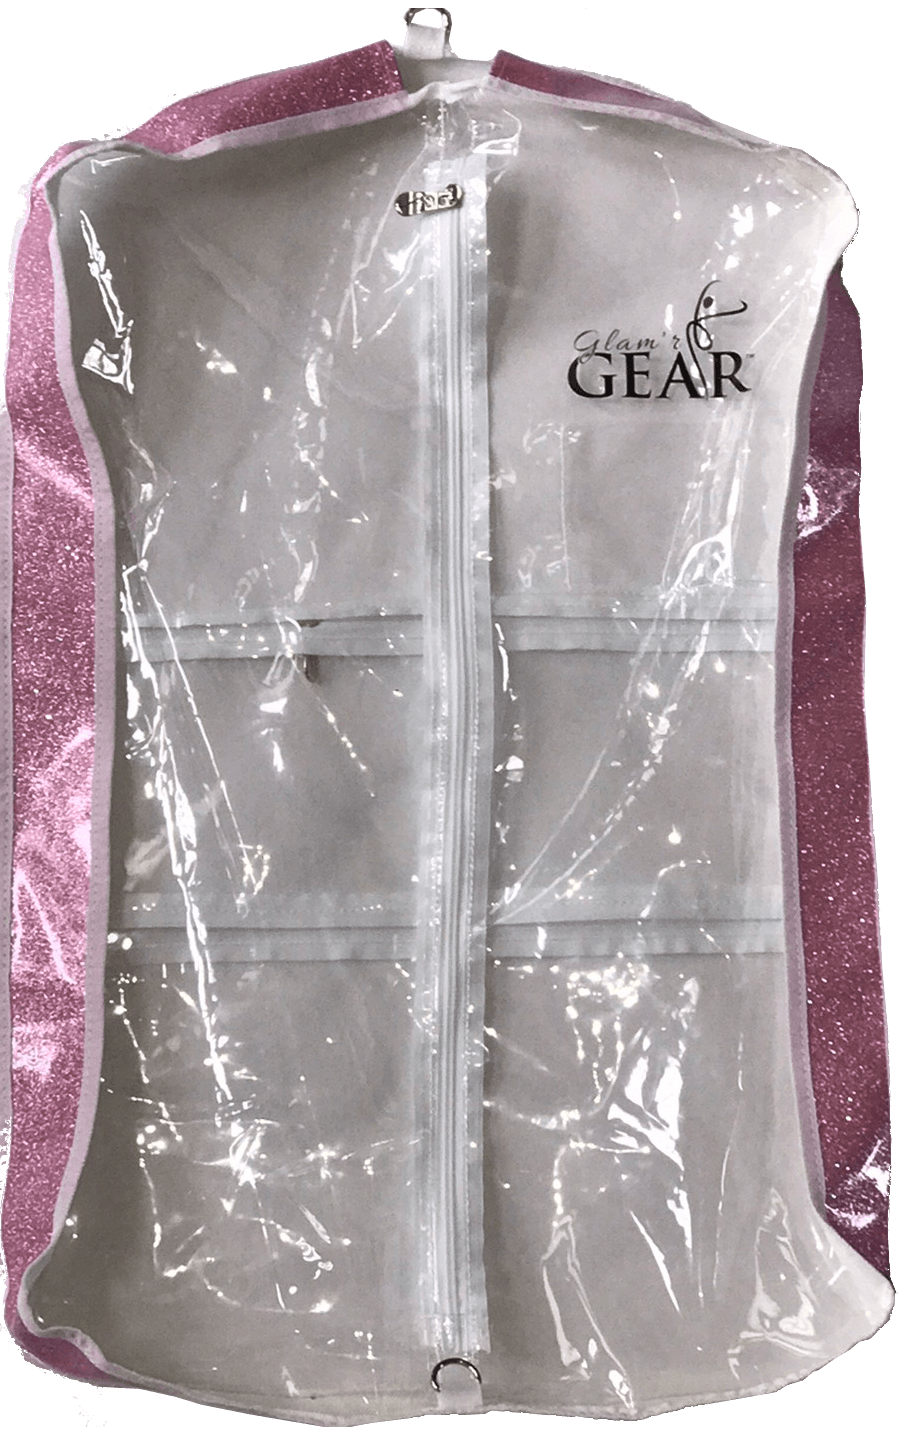 glam r gear bag